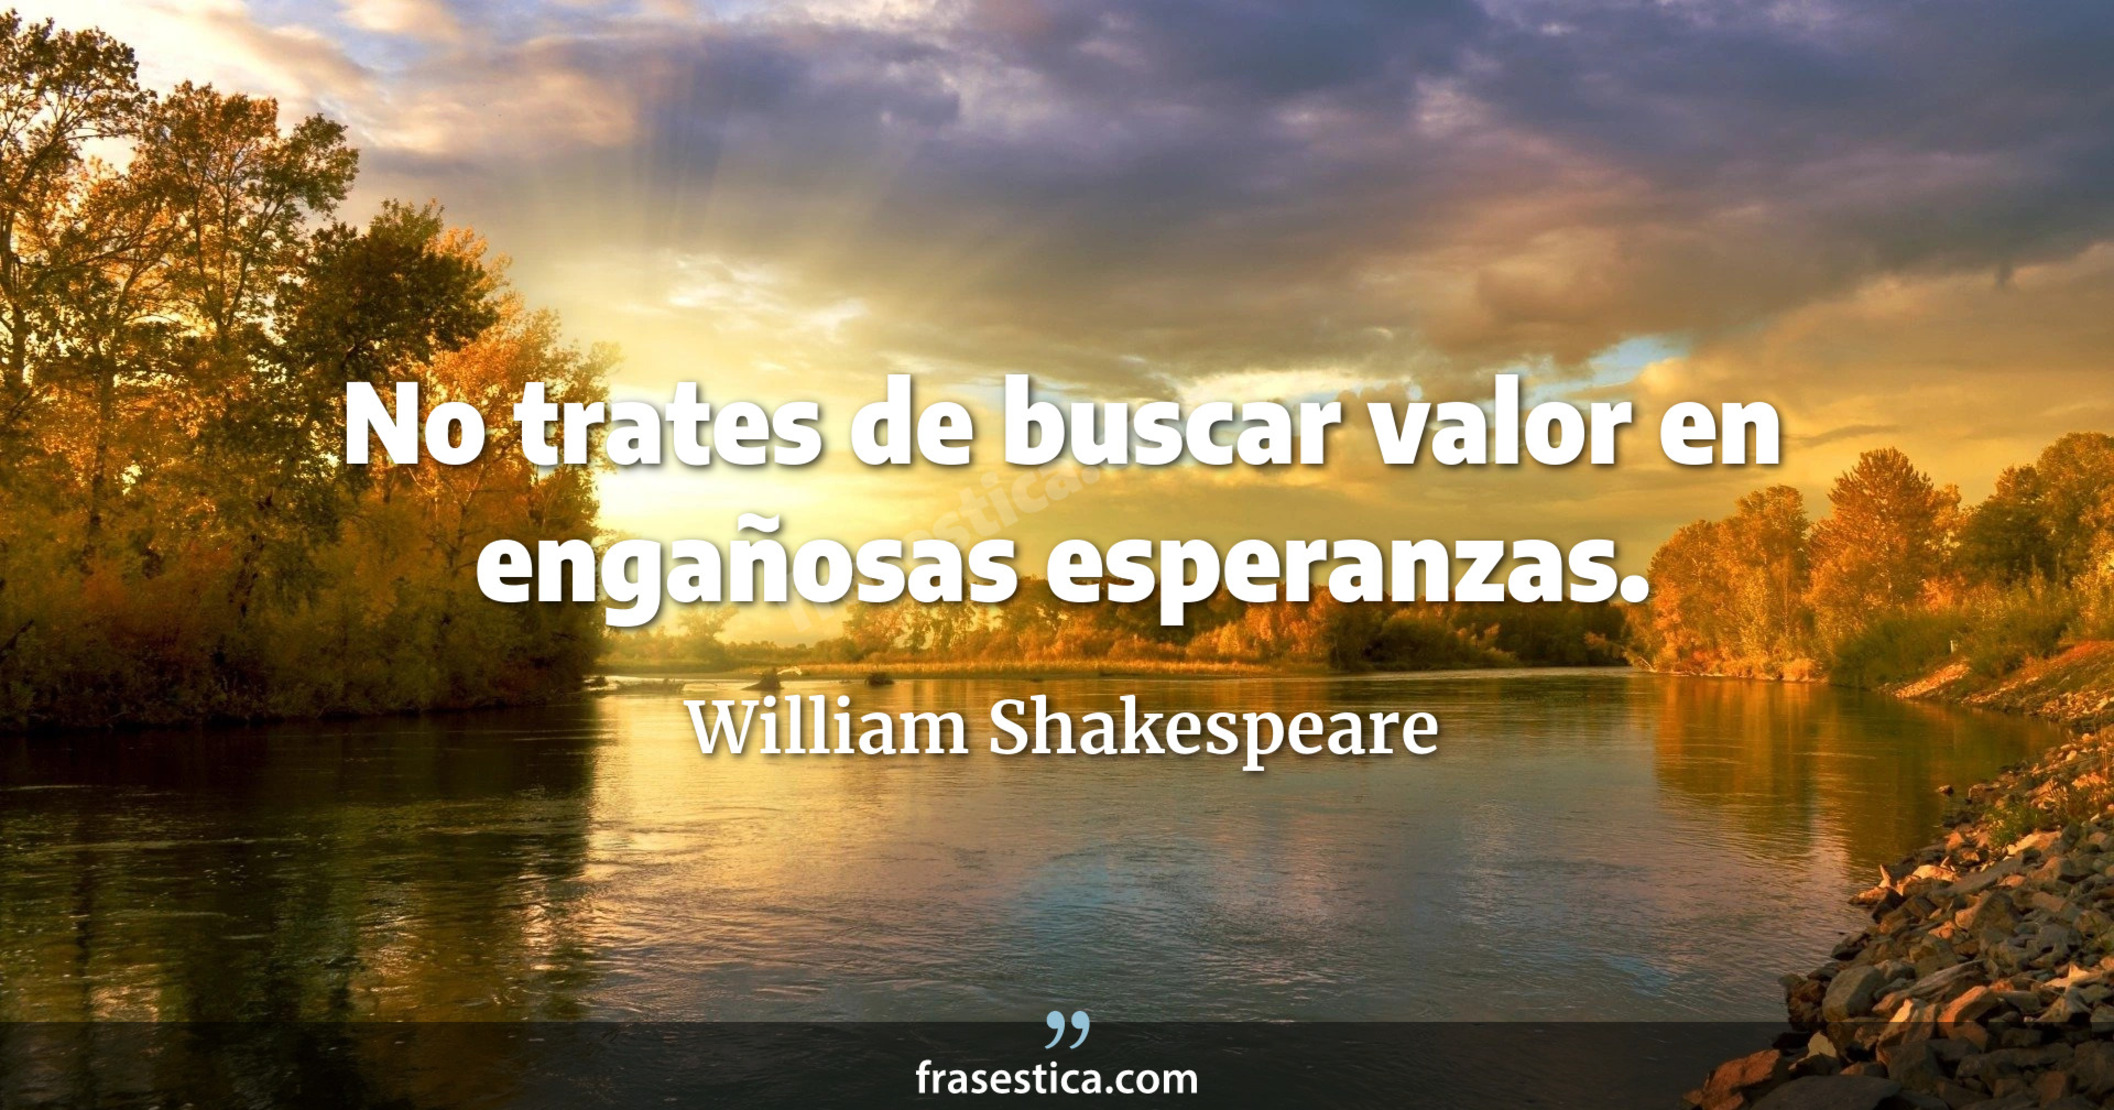 No trates de buscar valor en engañosas esperanzas. - William Shakespeare